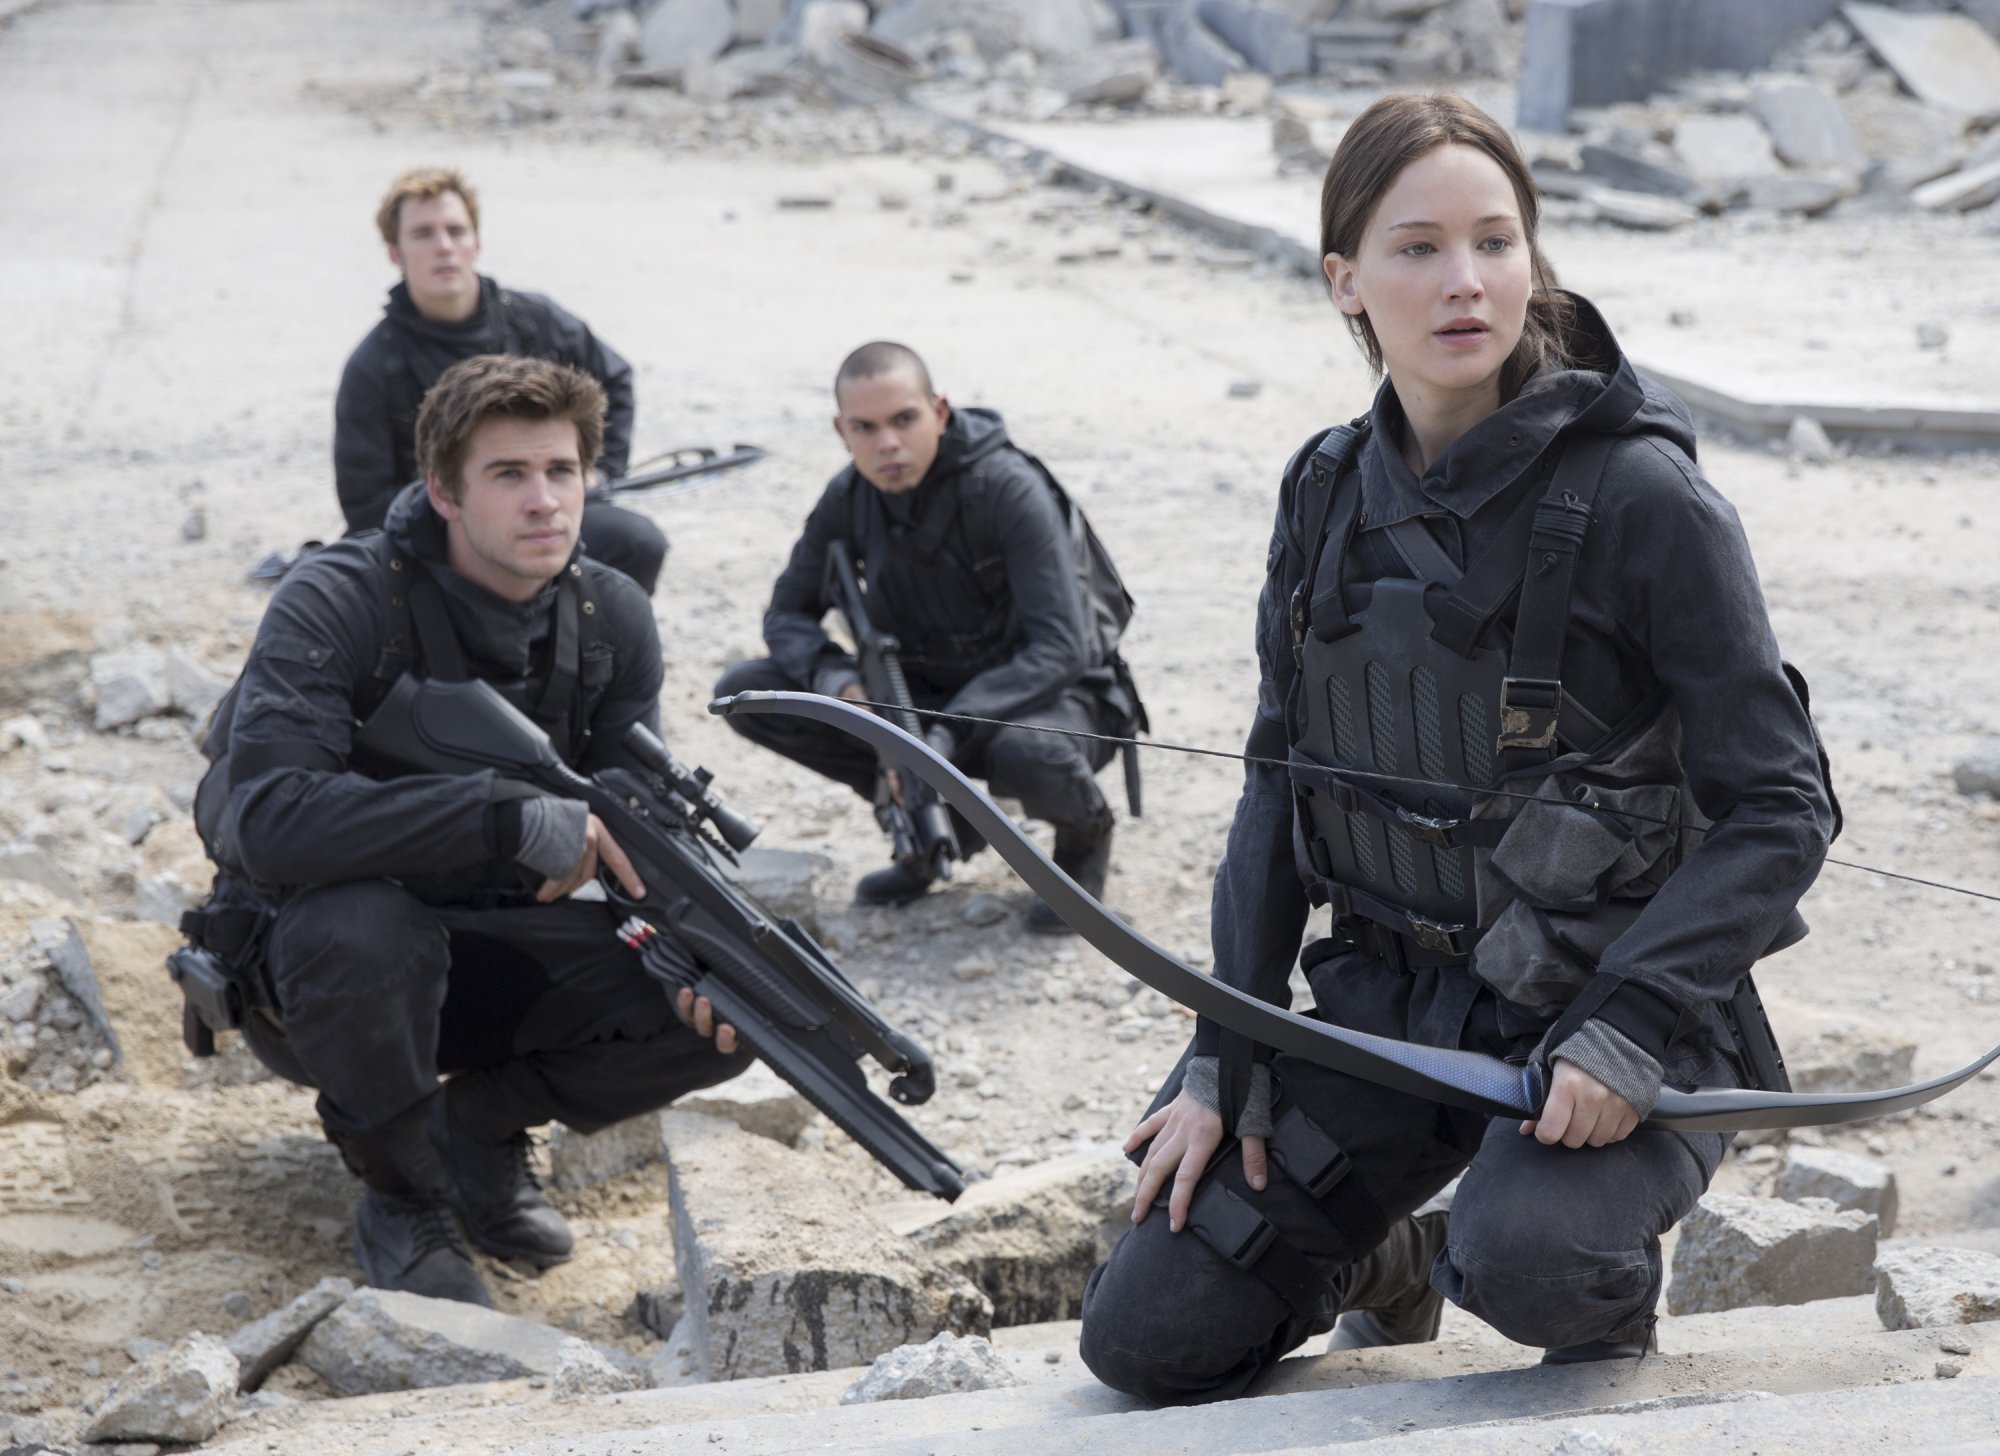 Έρχεται νέο βιβλίο «Hunger Games» – Πότε θα κυκλοφορήσει